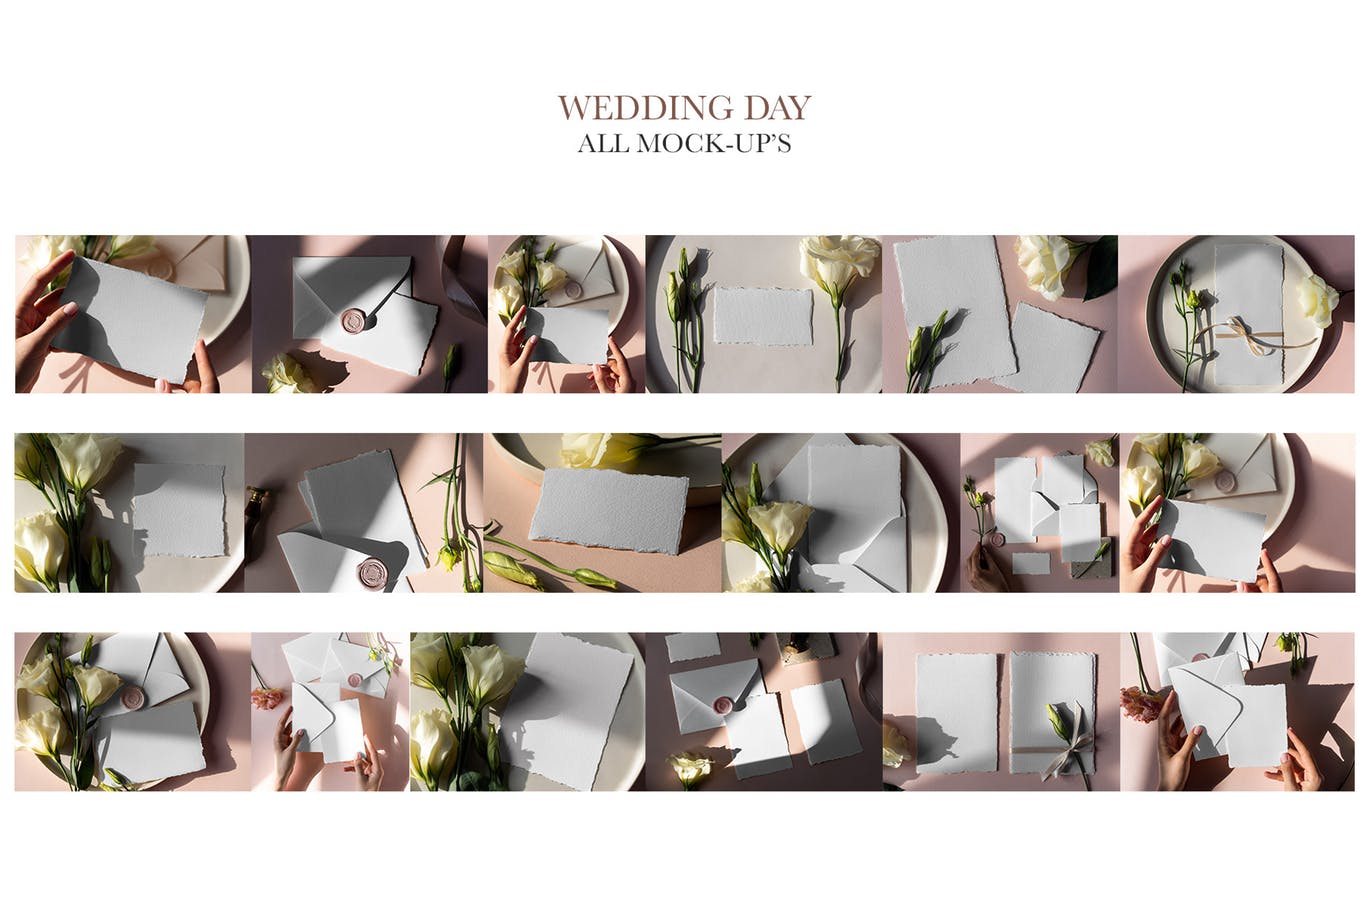 婚礼邀请设计素材效果预览样机套装 Wedding Day Mock-Up Tenderness插图(8)